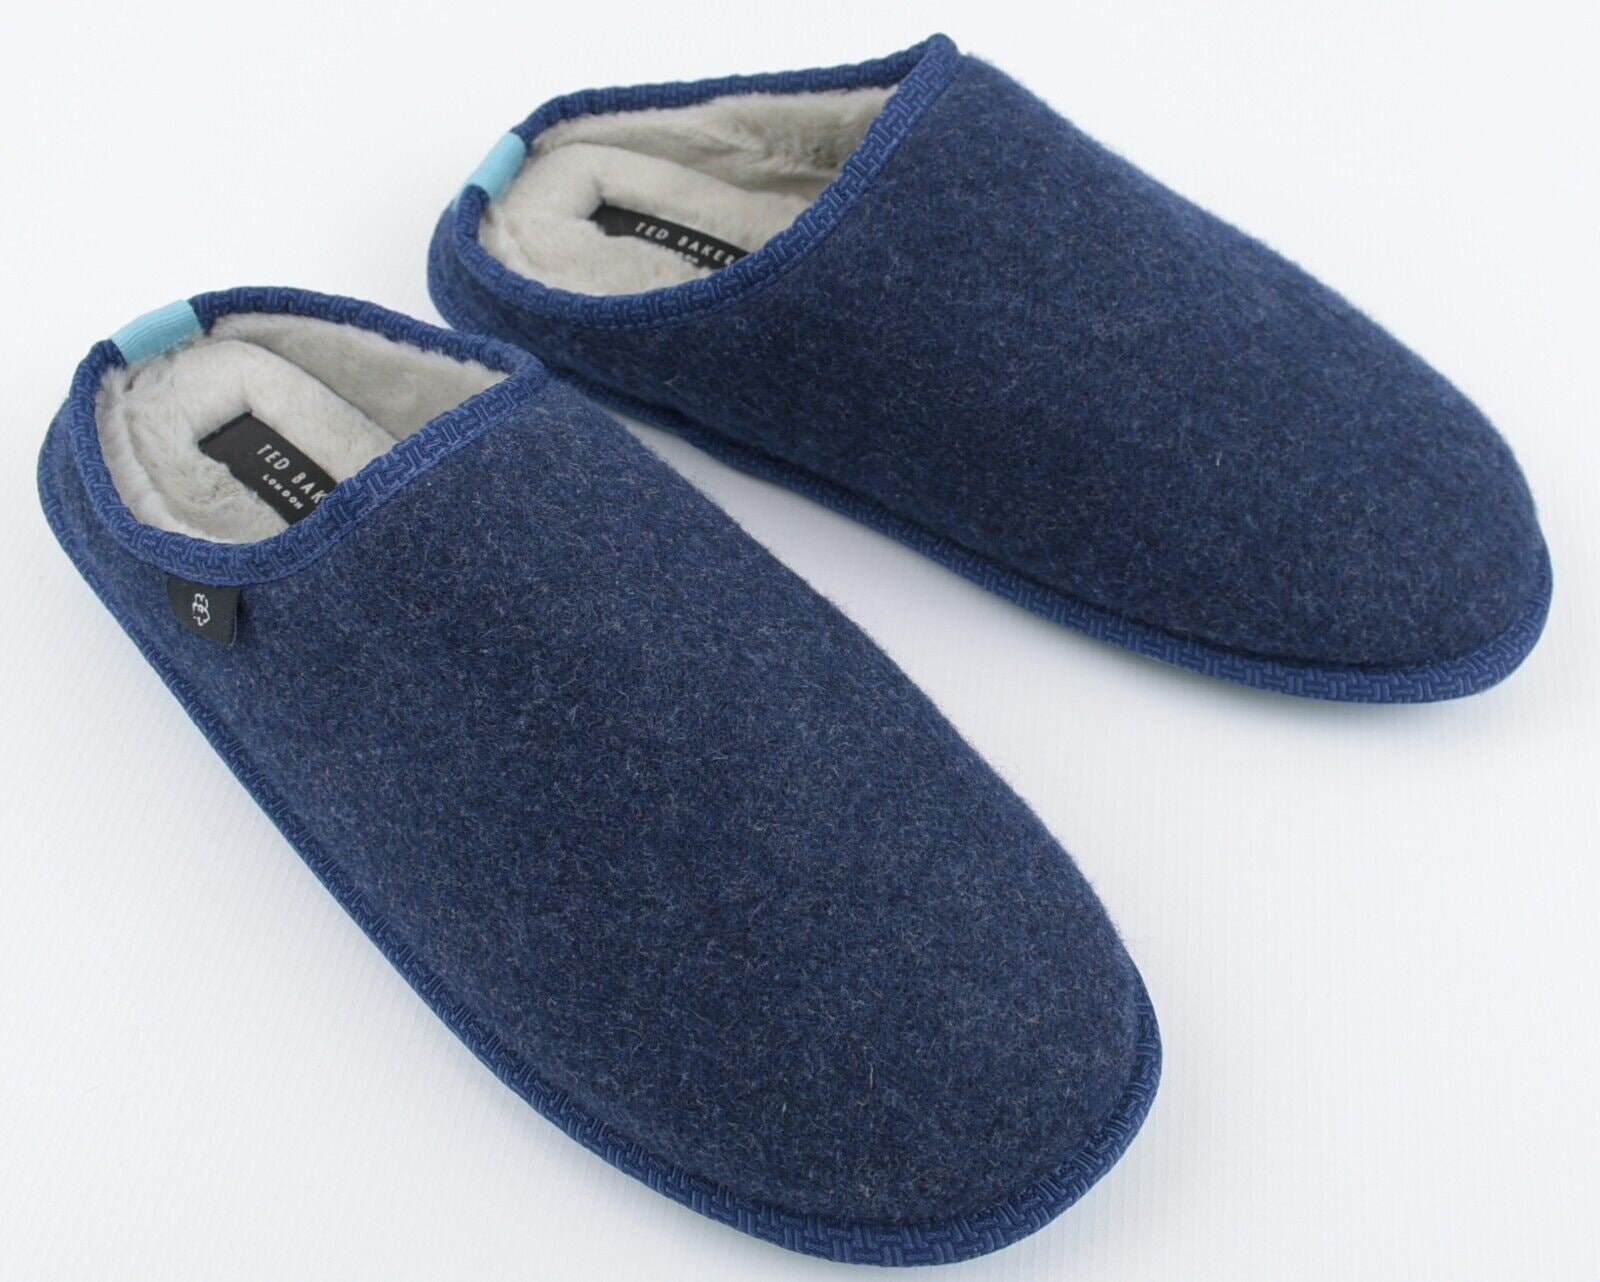 TED BAKER Men's SIMONN Felt Mulet Sole Slippers, Blue, size UK 7 /EU 1